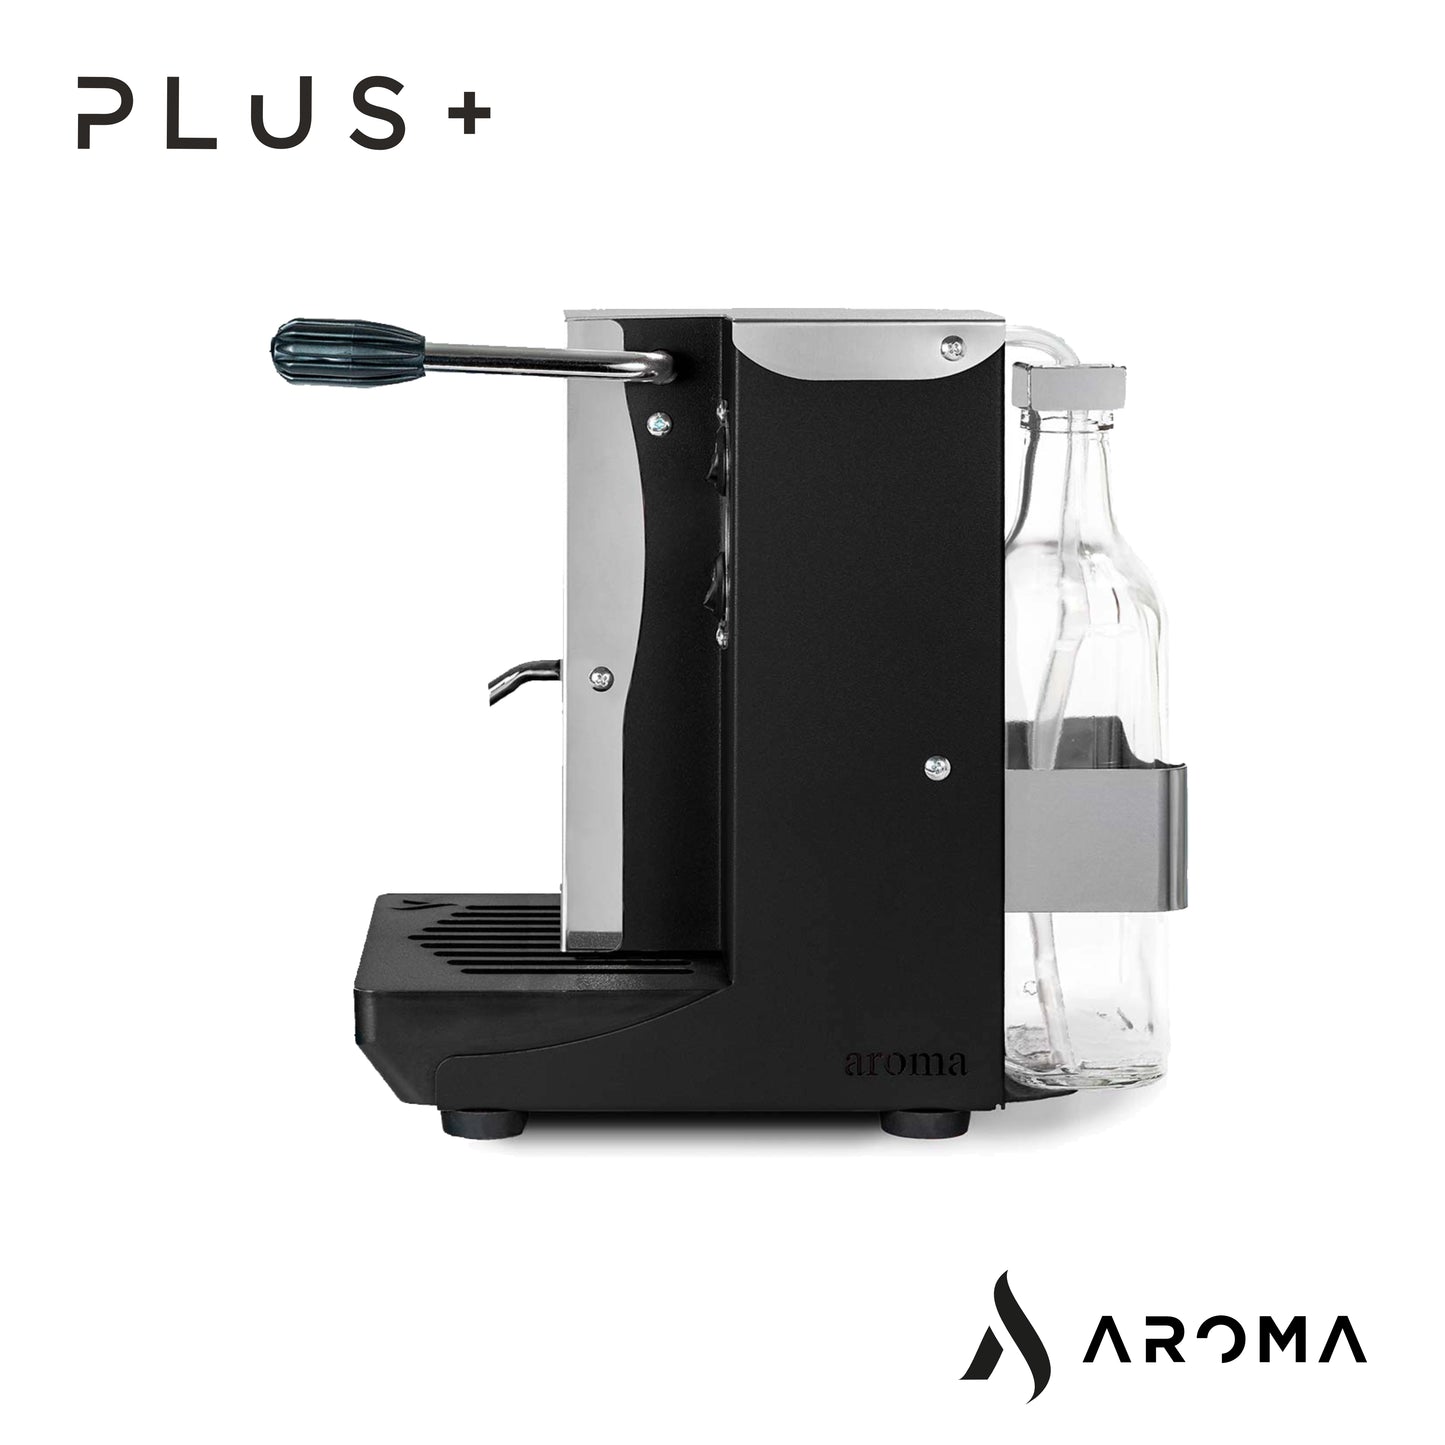 gennAROMArfucci PLUS+ Espresso-Maschine